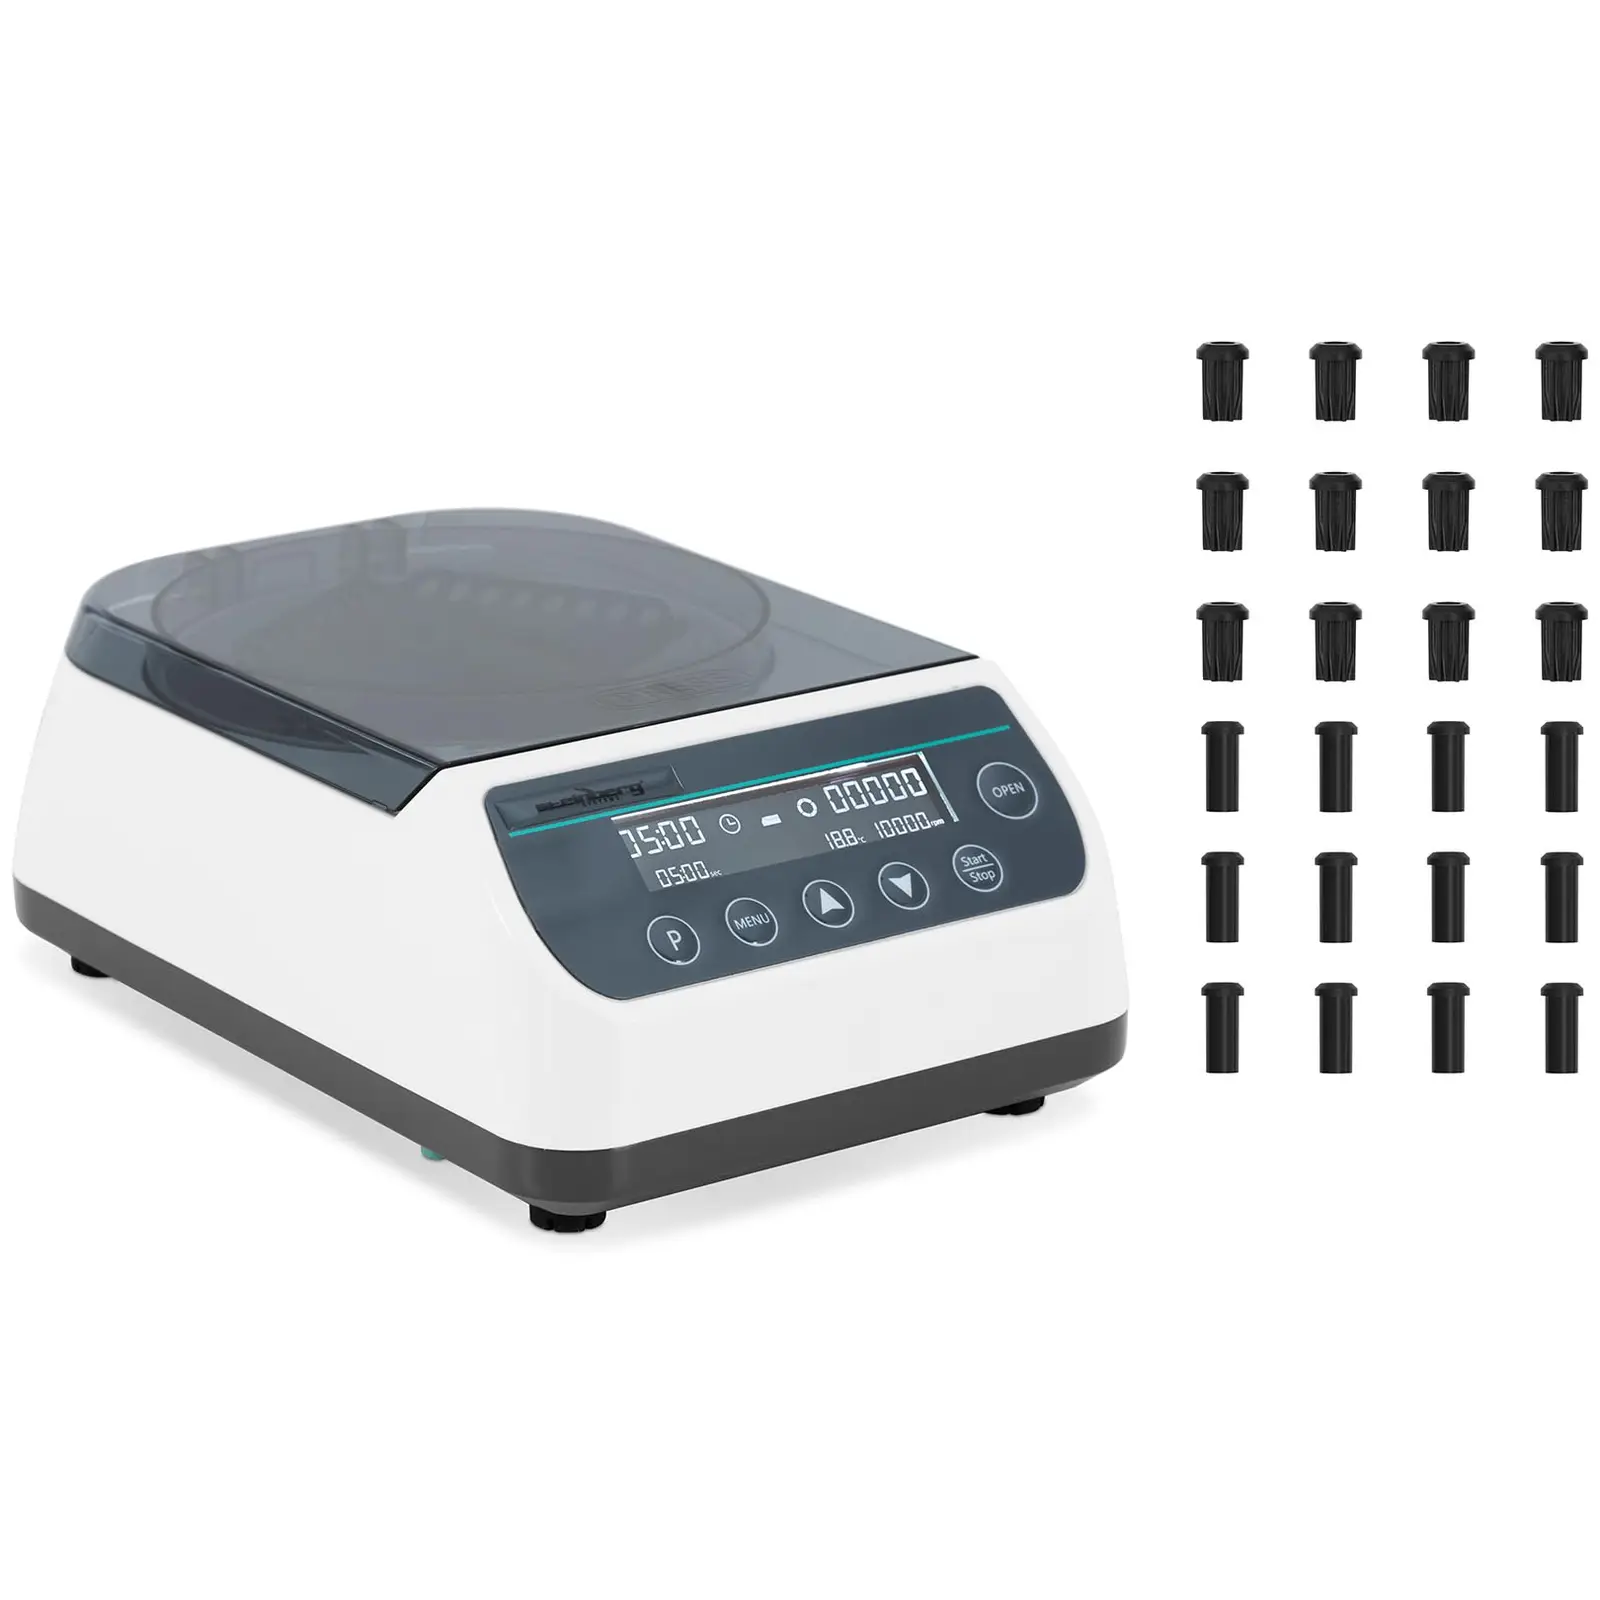 Benktopp sentrifuge - Høy hastighet - 2-i-1 rotor - 10000 rpm - for 12 rør / 4 PCR-strips - RZB 6708 xg